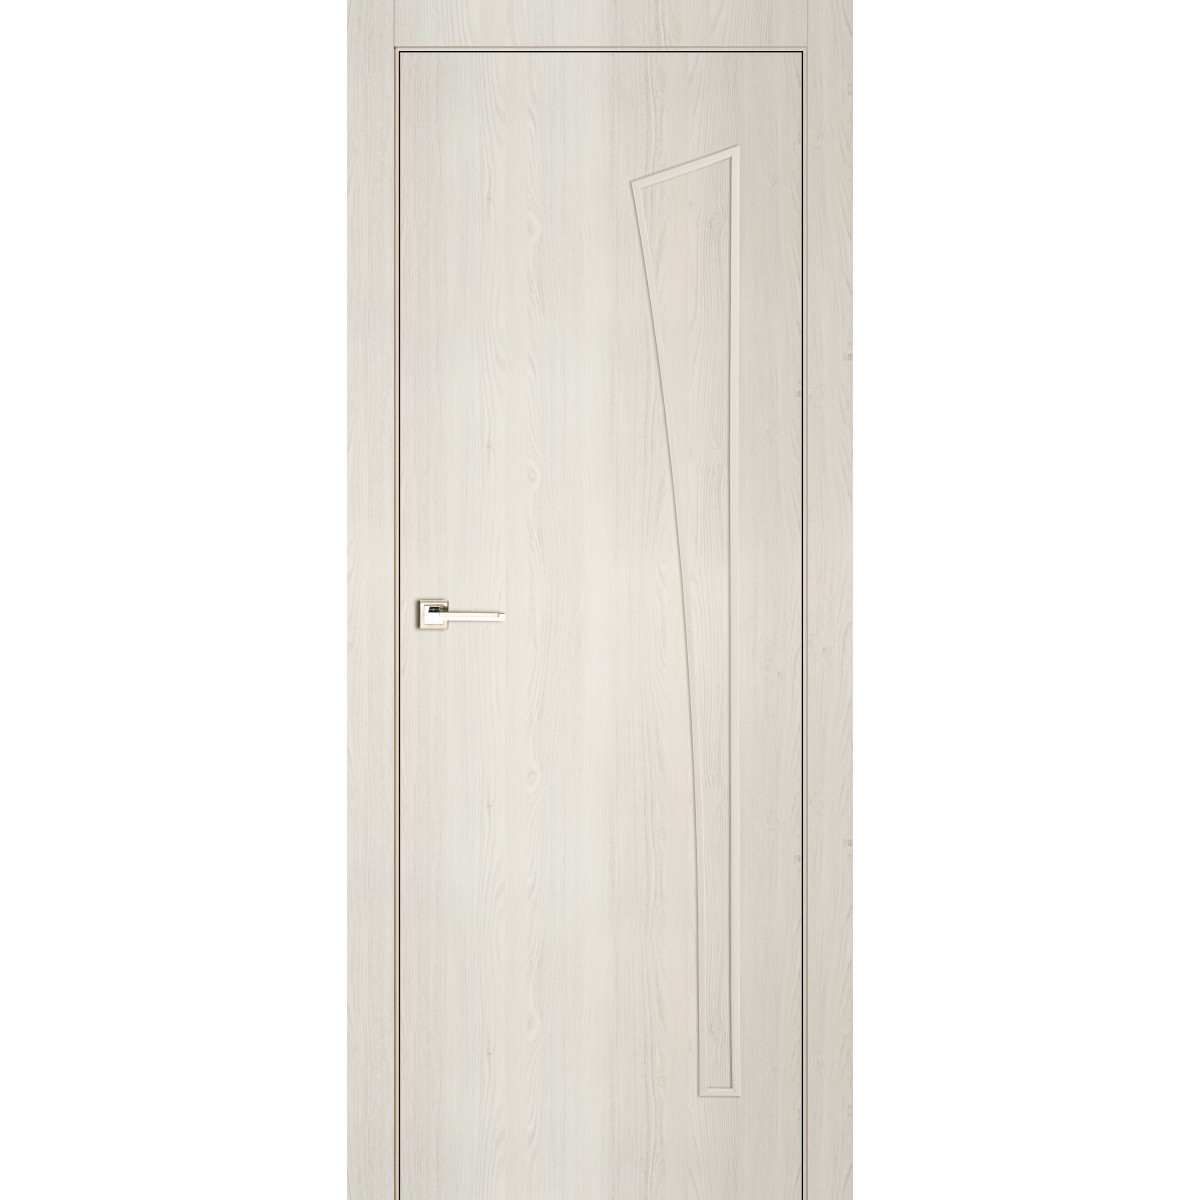 Дверь межкомнатная глухая ламинированная Белеза 200х70 см цвет тернер белый